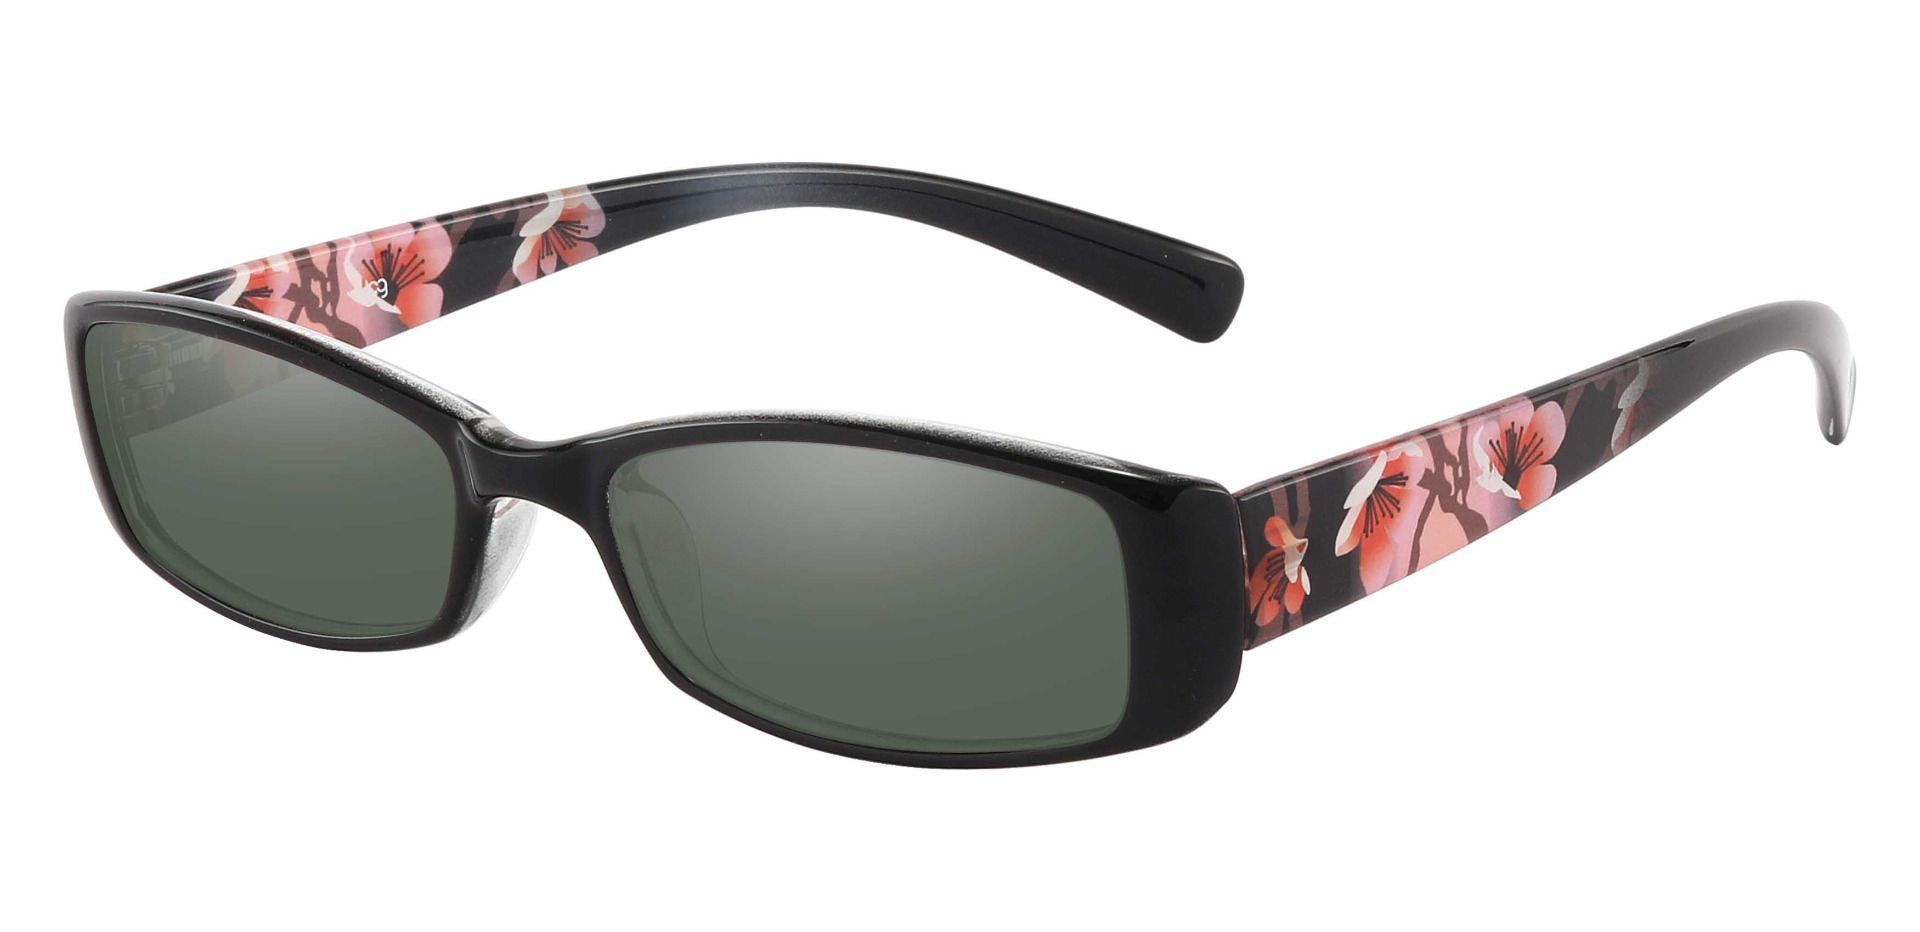 Medora Rectangle Reading Sunglasses - Black Frame With Green Lenses